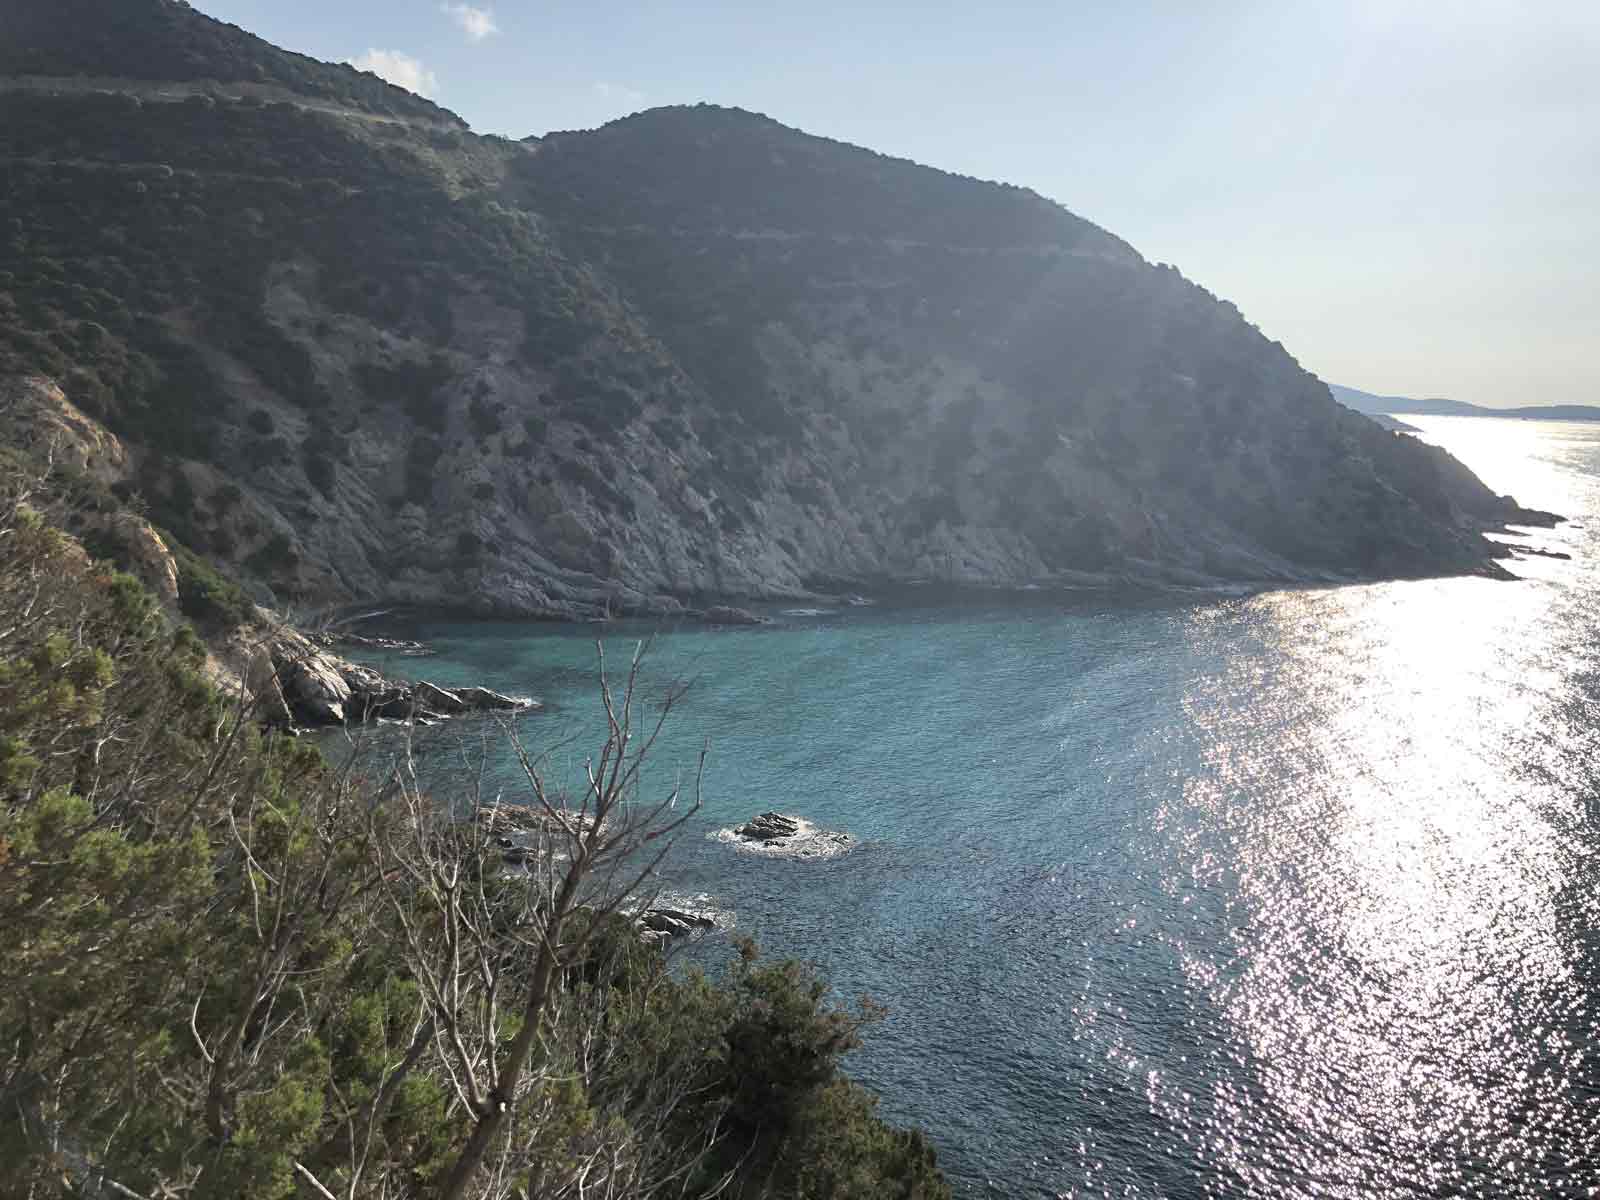 Immersi tra mare e verde negli scenari della Costa Rei in Sardegna